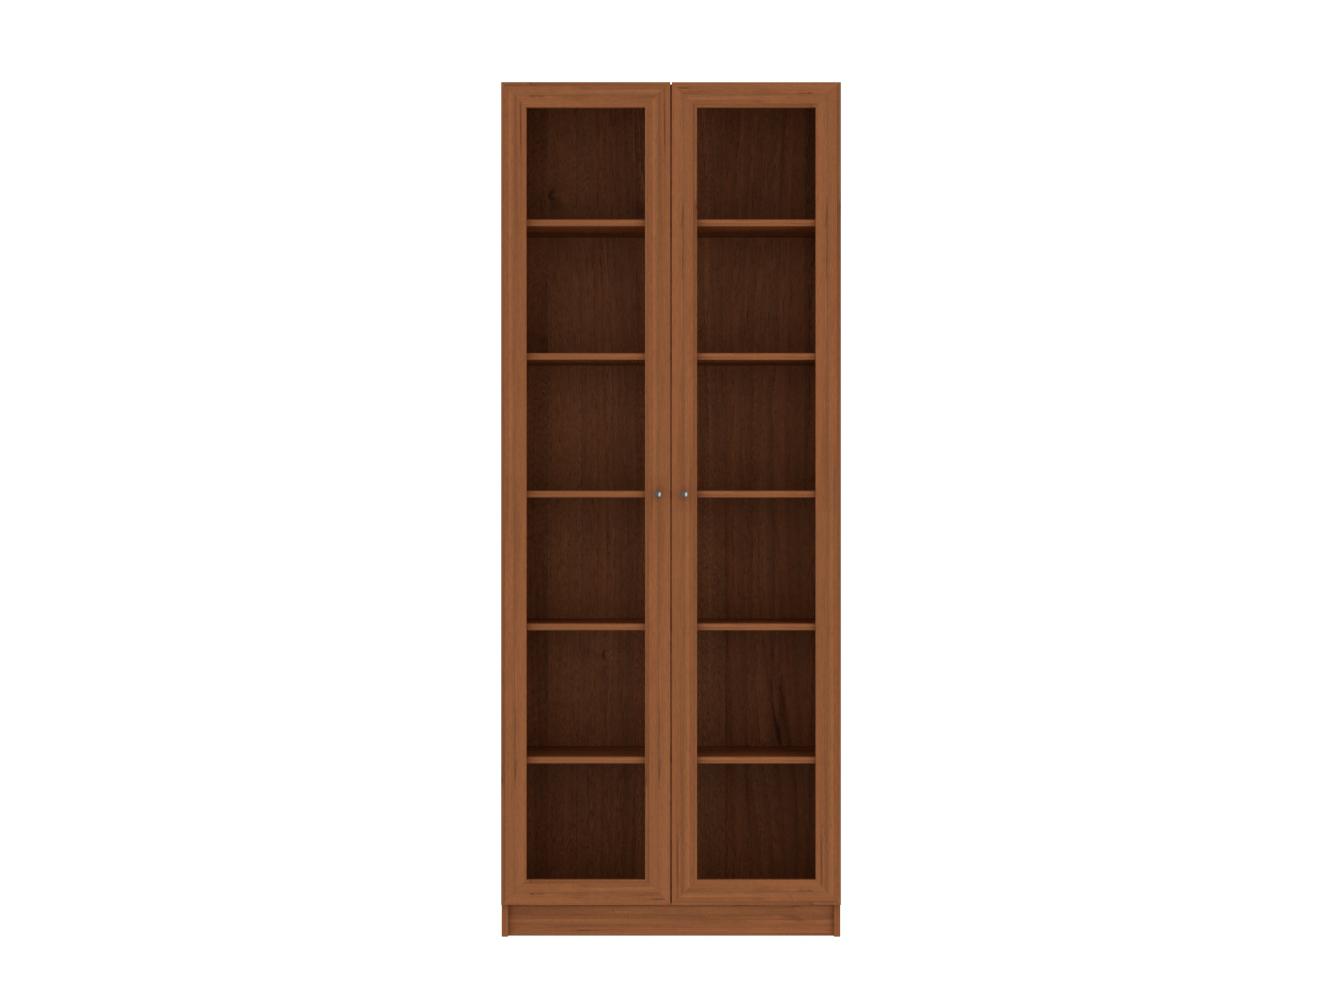  Книжный шкаф Билли 336 walnut guarneri ИКЕА (IKEA) изображение товара